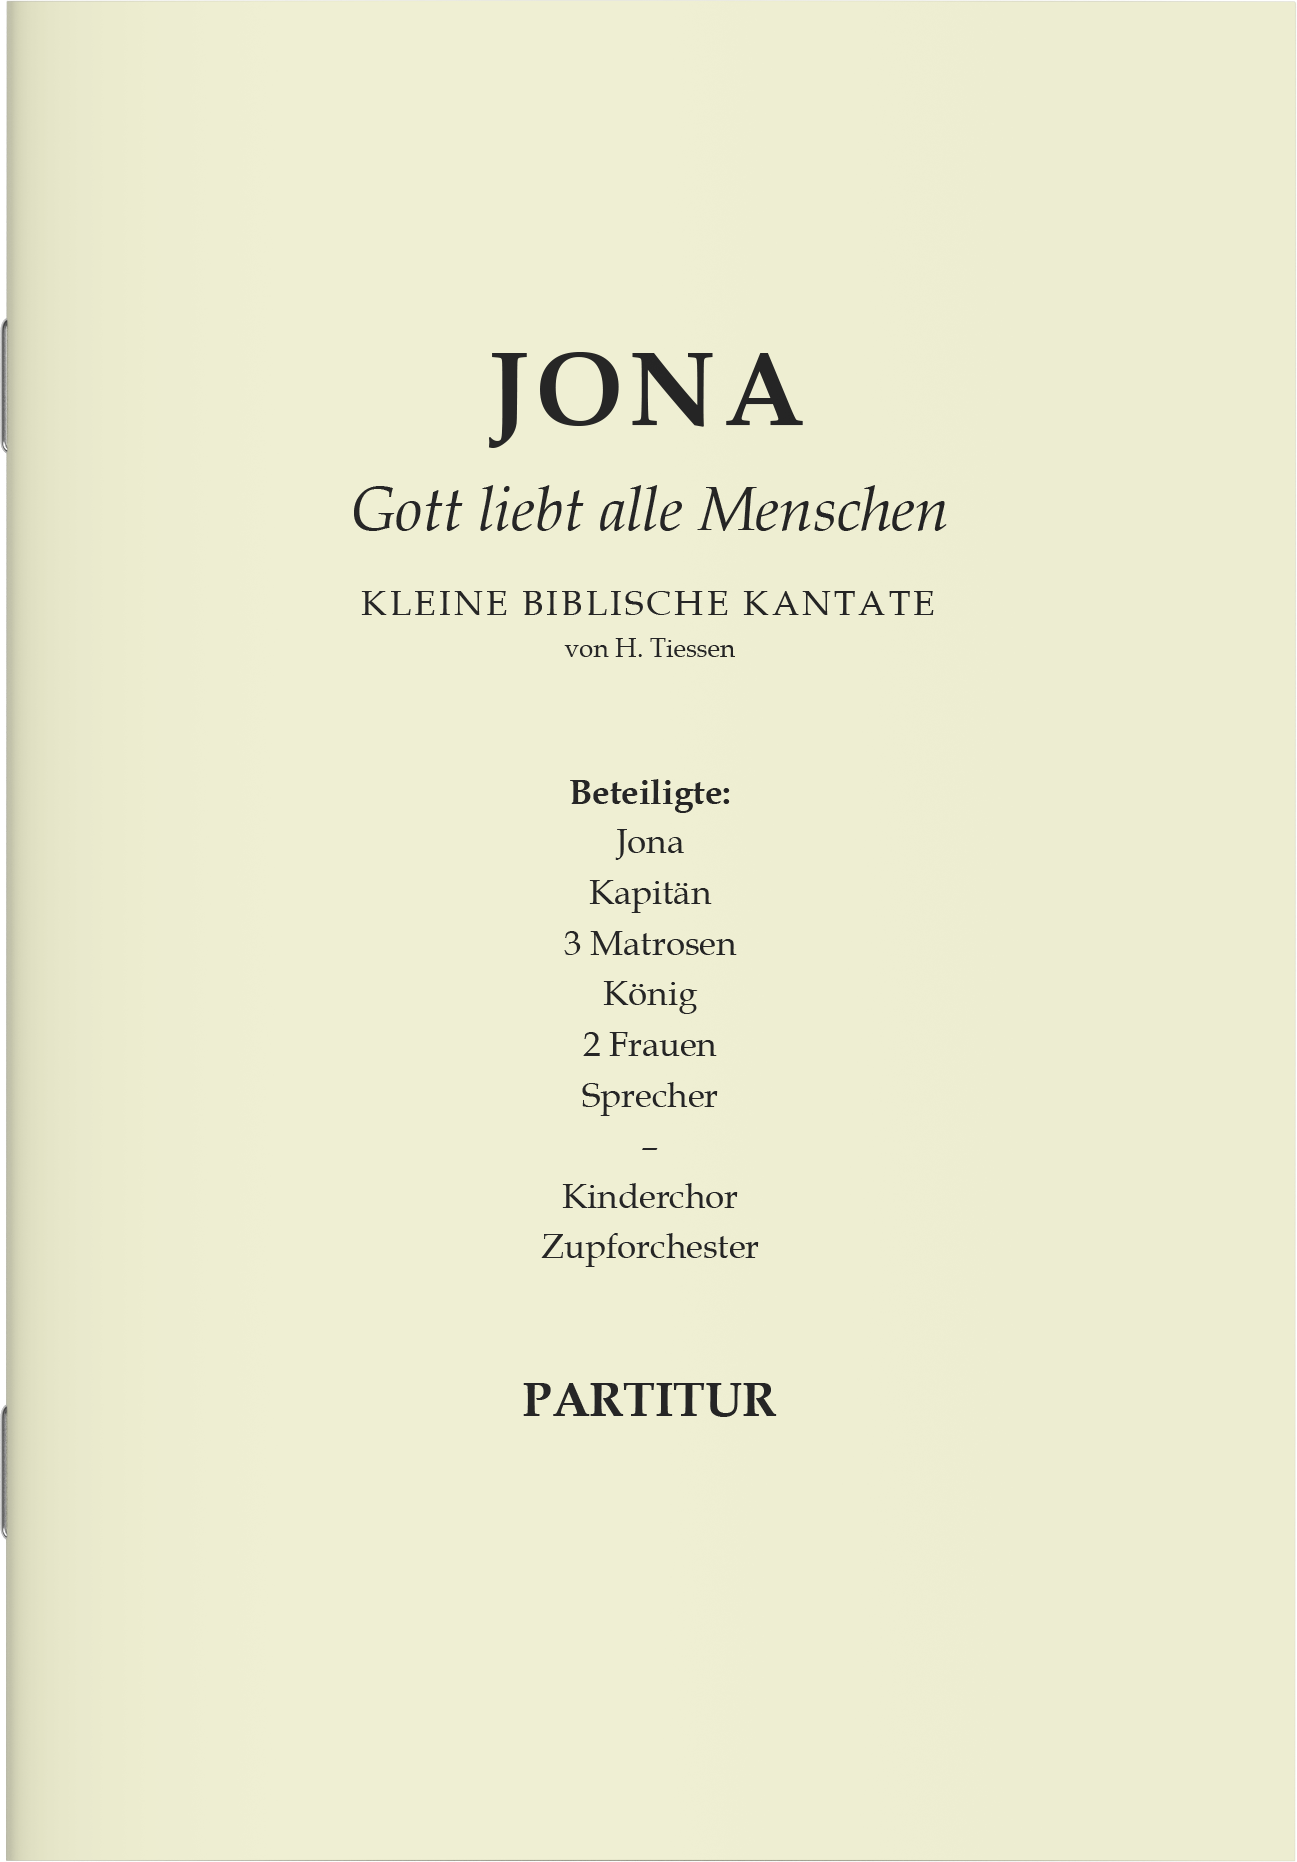 Partitur - Jona (Kantate für Kinderchor)